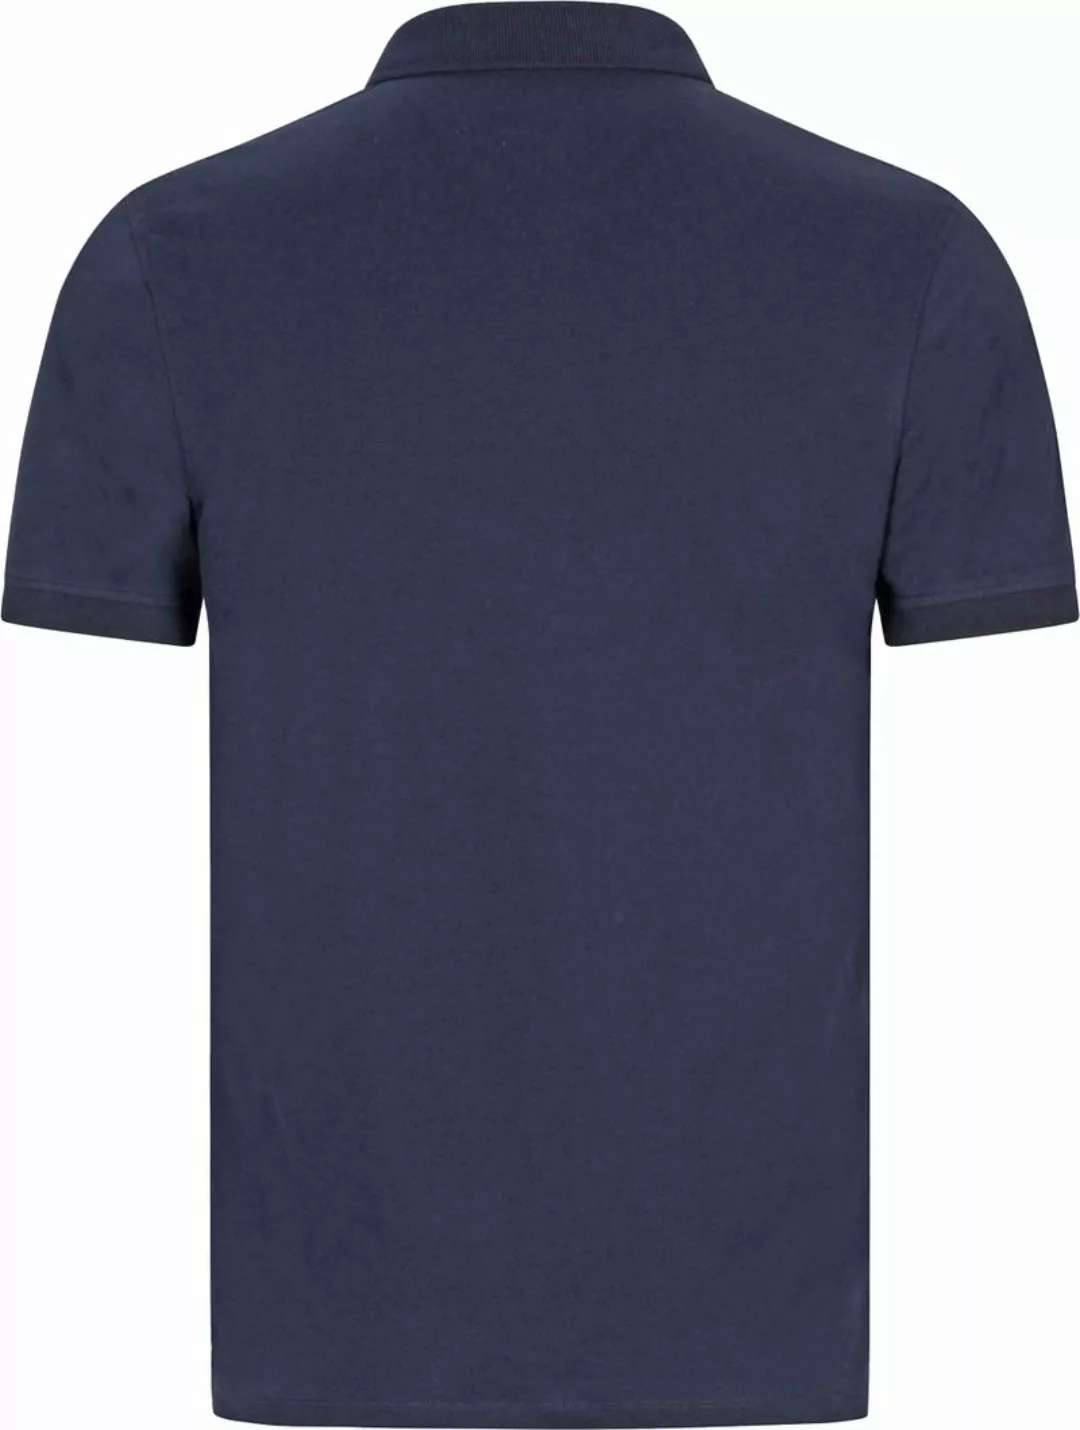 Cavallaro Bavegio Poloshirt Navy - Größe 3XL günstig online kaufen